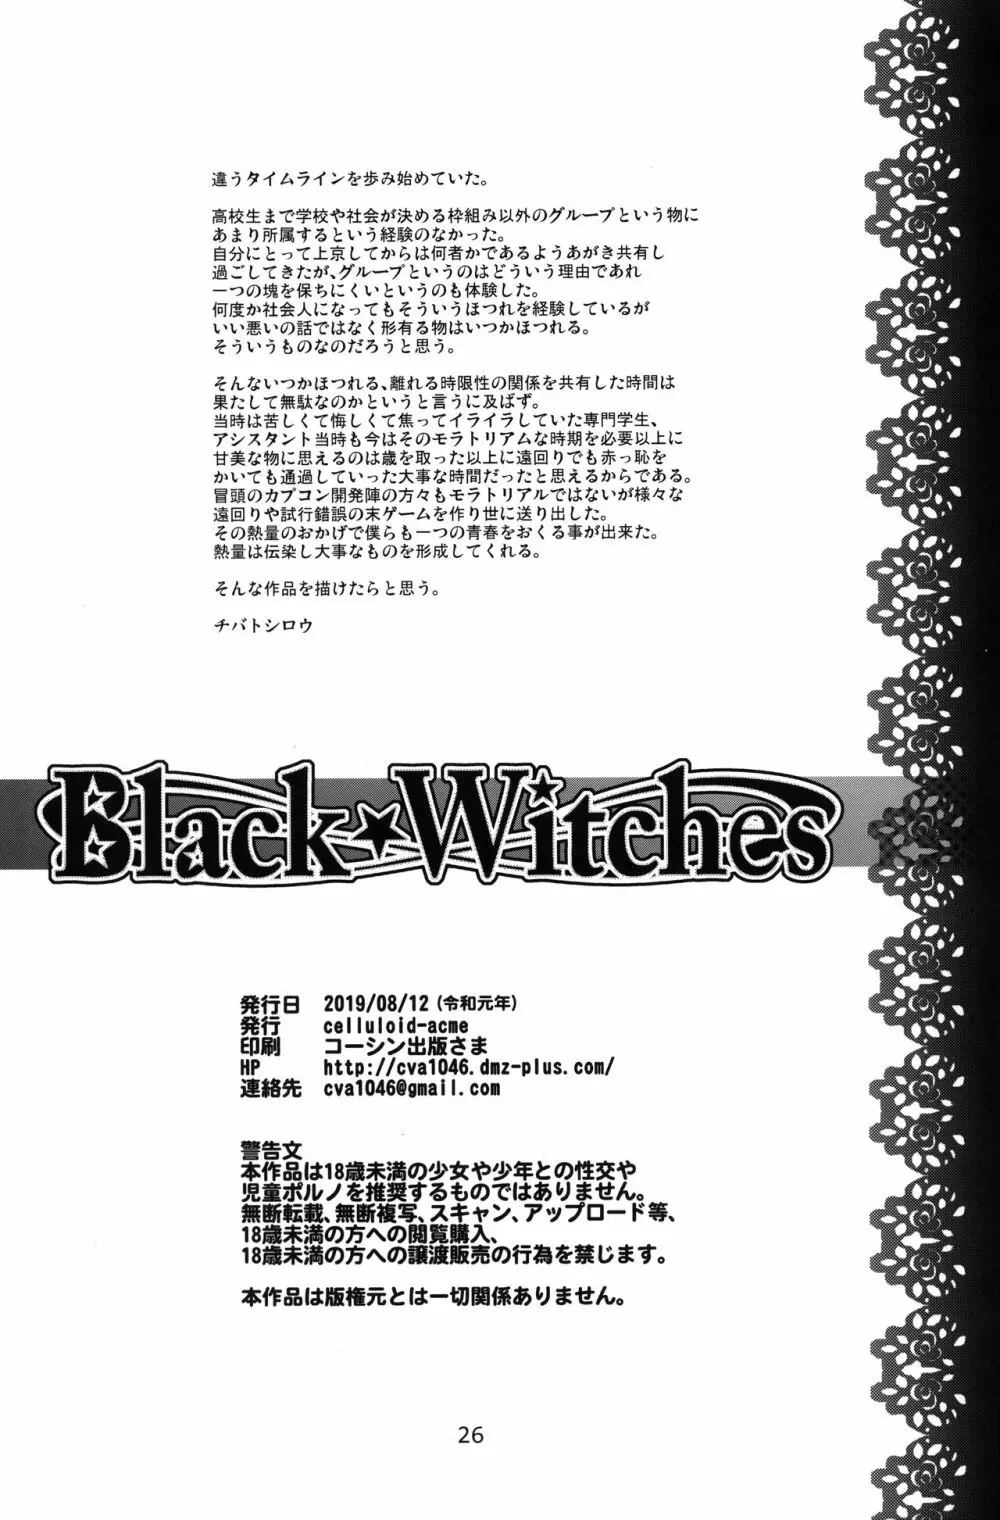 Black Witches 2 26ページ